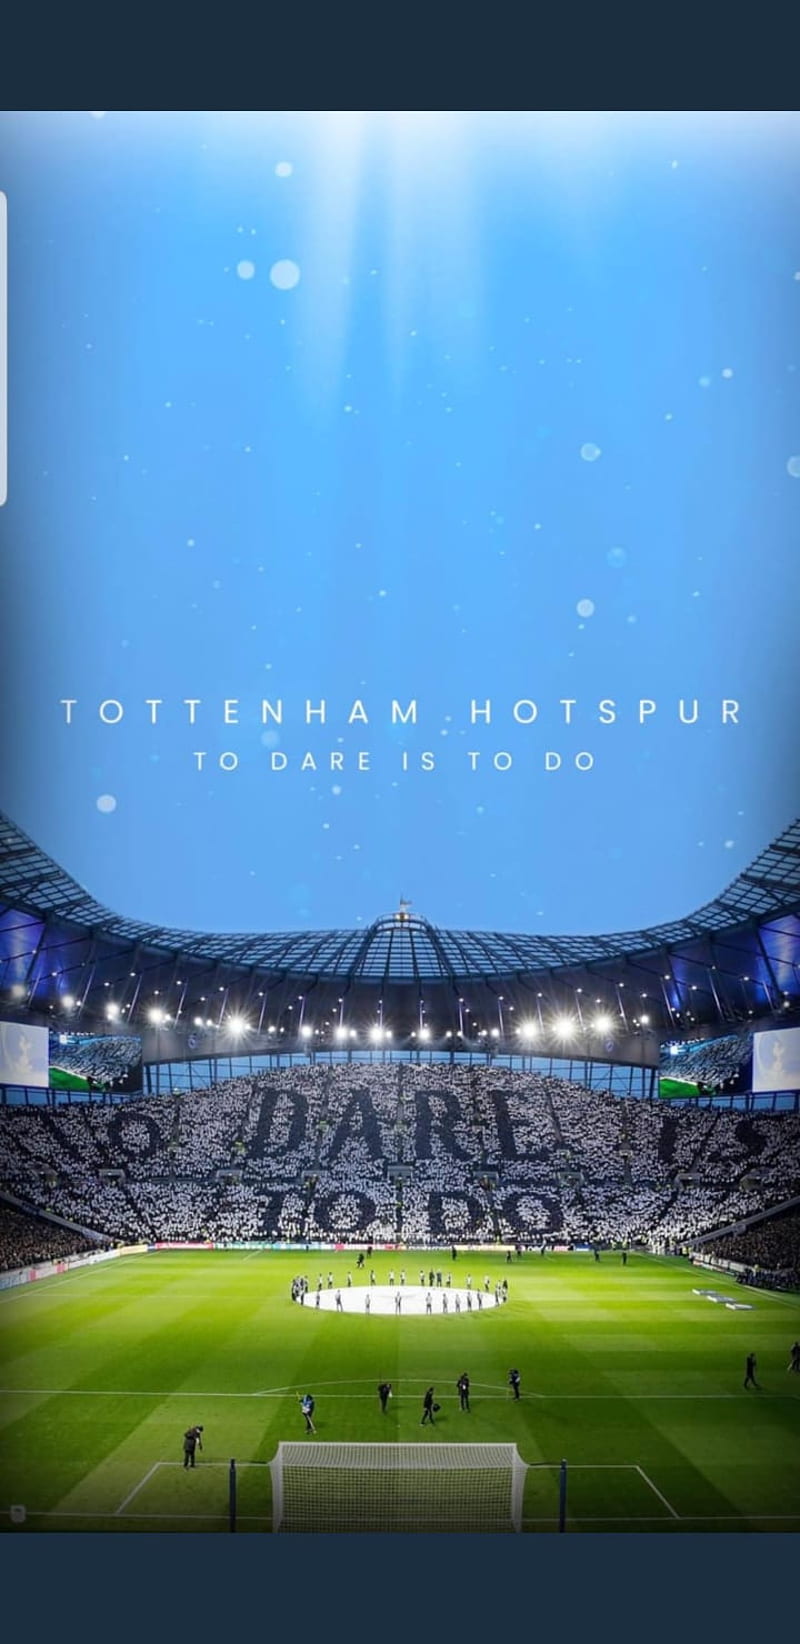 Tottenham Sport Spurs Hd Mobile Wallpaper Peakpx